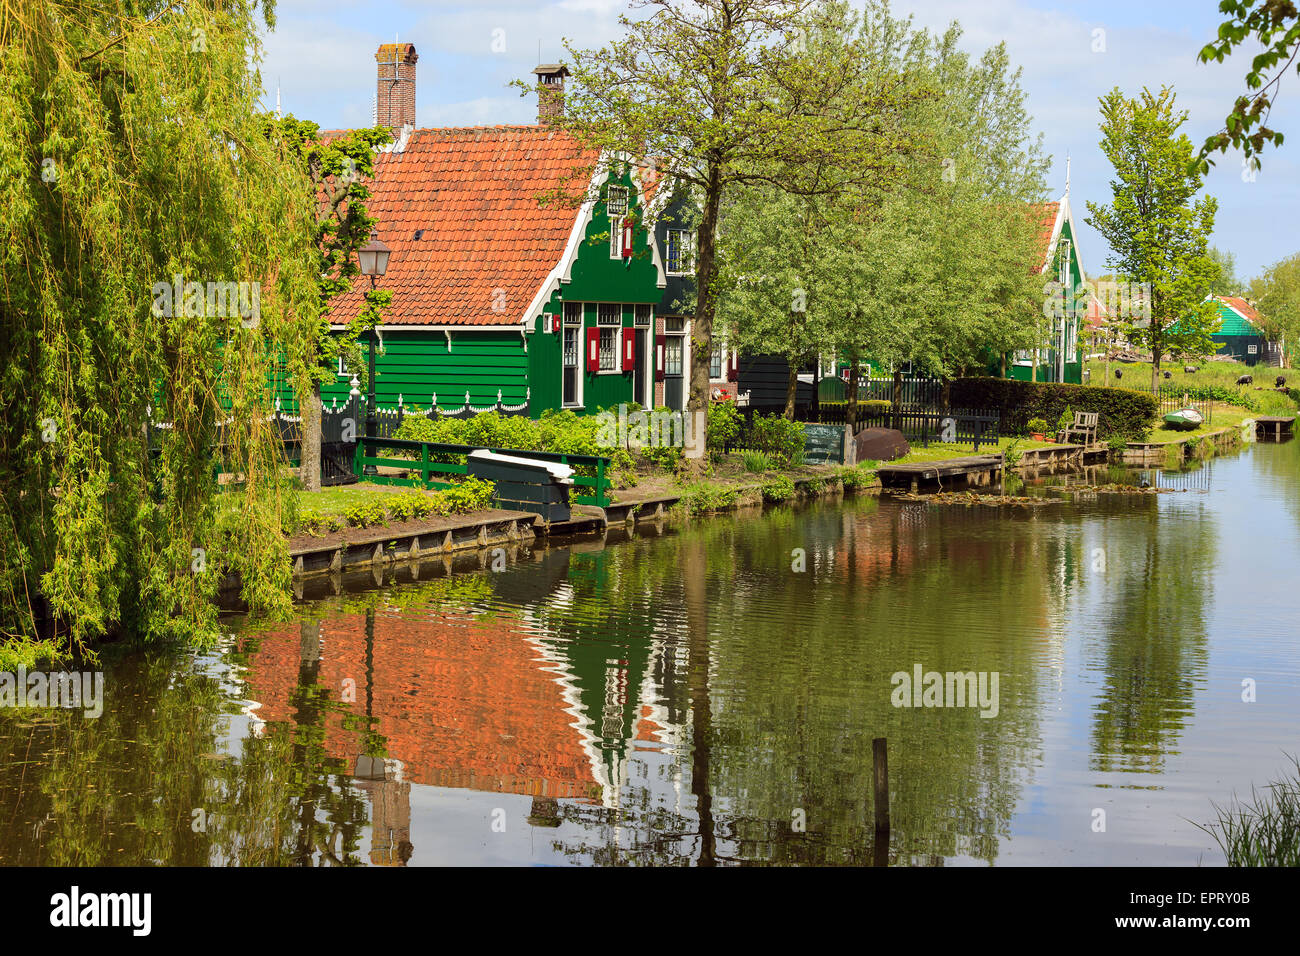 Auf der Zaanse Schans, holländische Windmühlen entlang des Flusses De Zaan nördlich von Amsterdam, Niederlande. Stockfoto